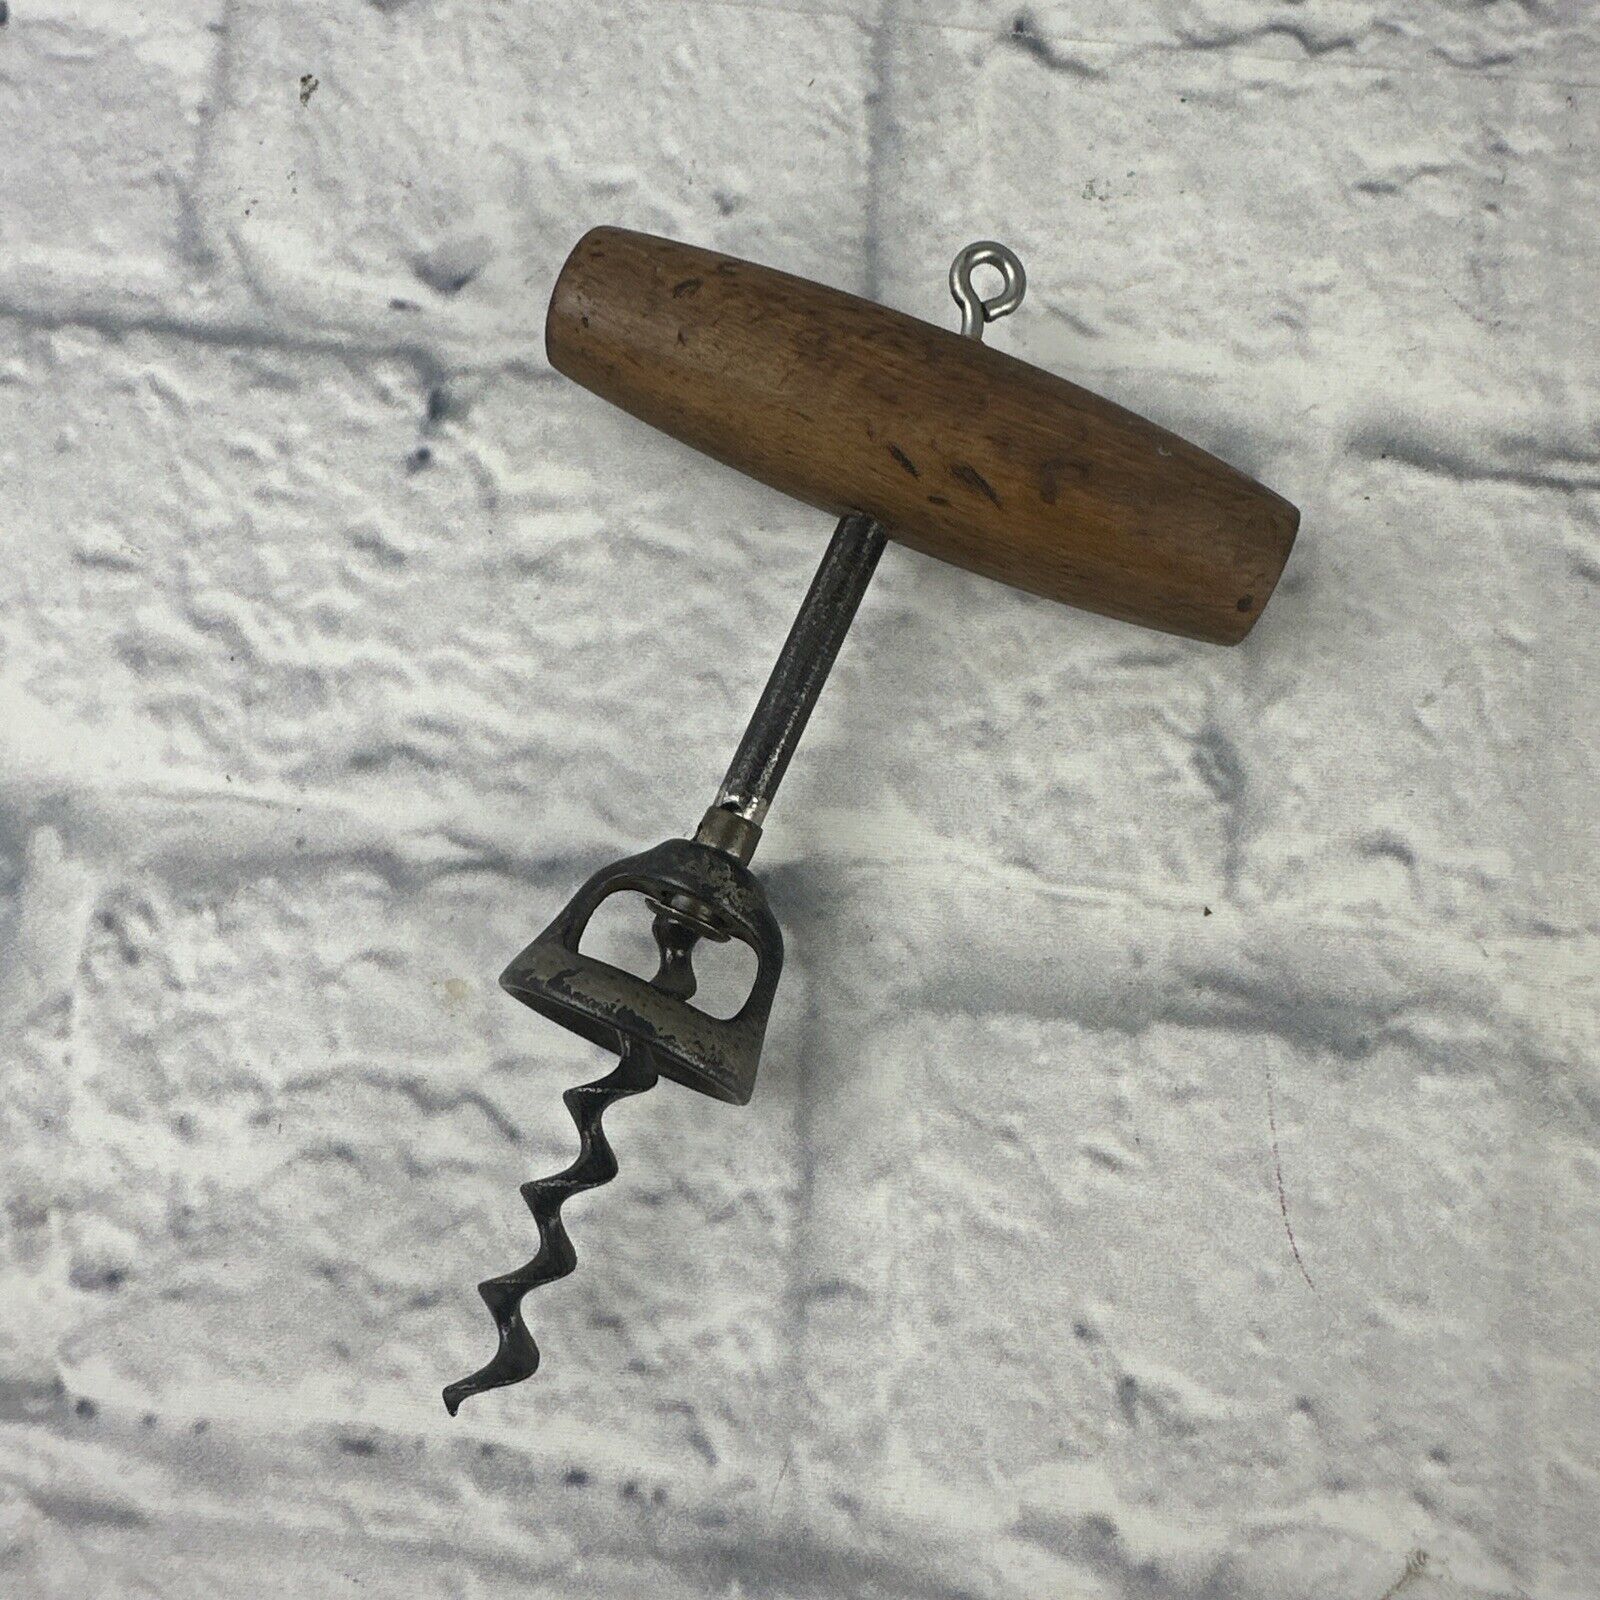 Antique Wooden Handled Bell Corkscrew. Still Sharp